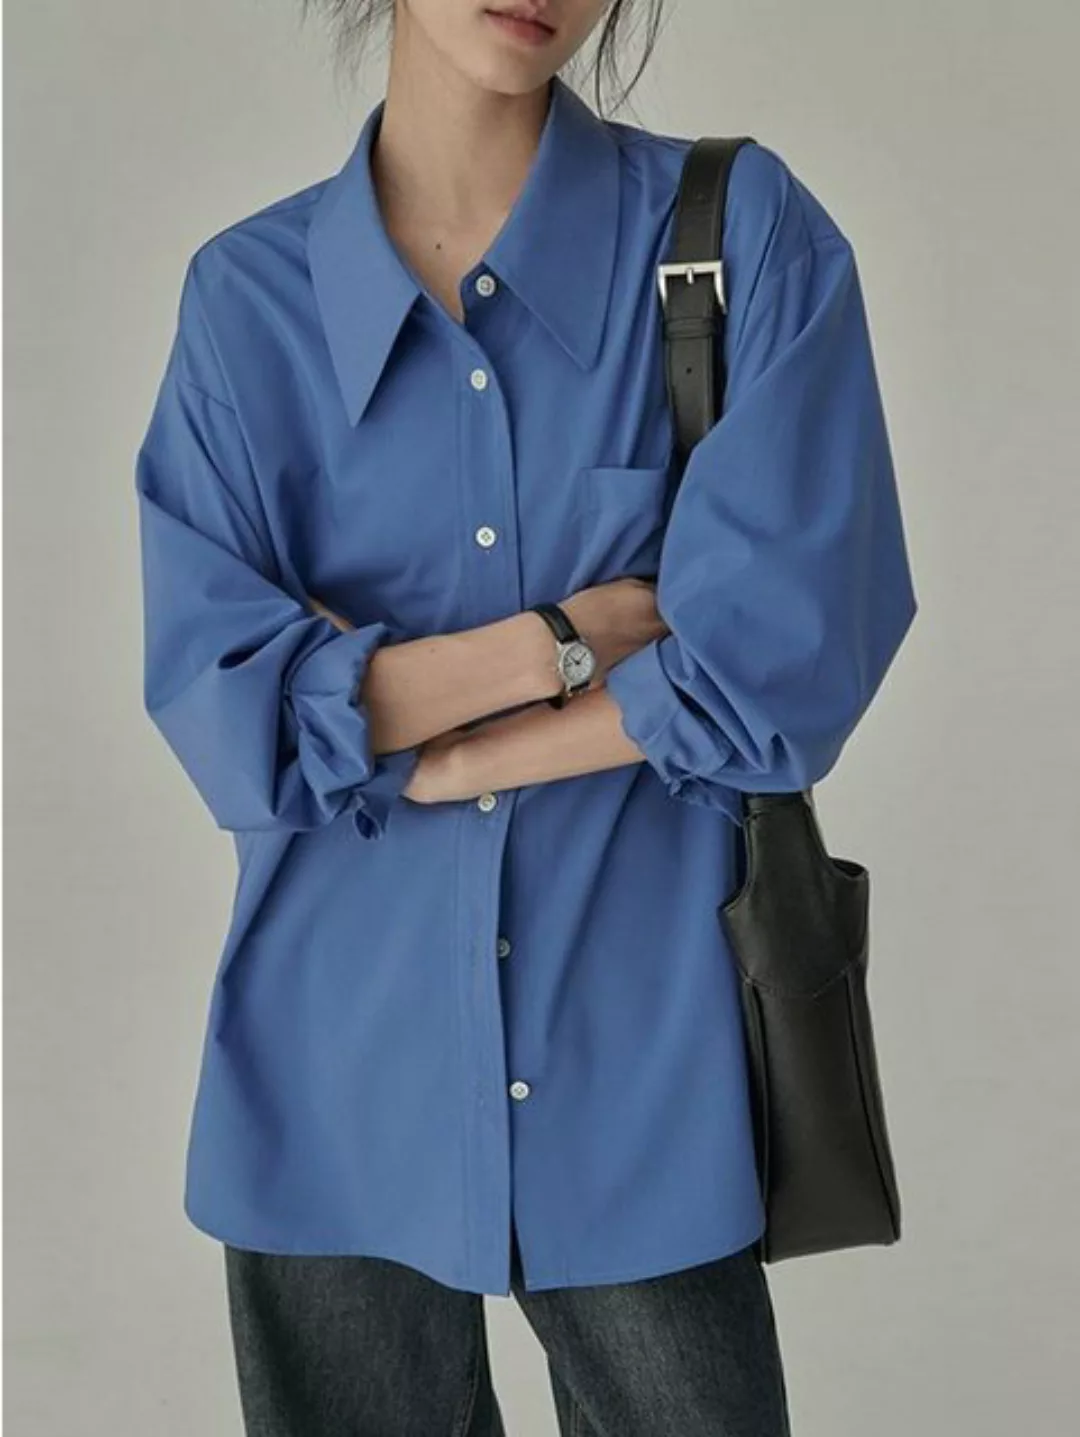 RUZU UG Blusentop Neues, bügelfreies, langärmliges Hemd zum Abnehmen günstig online kaufen